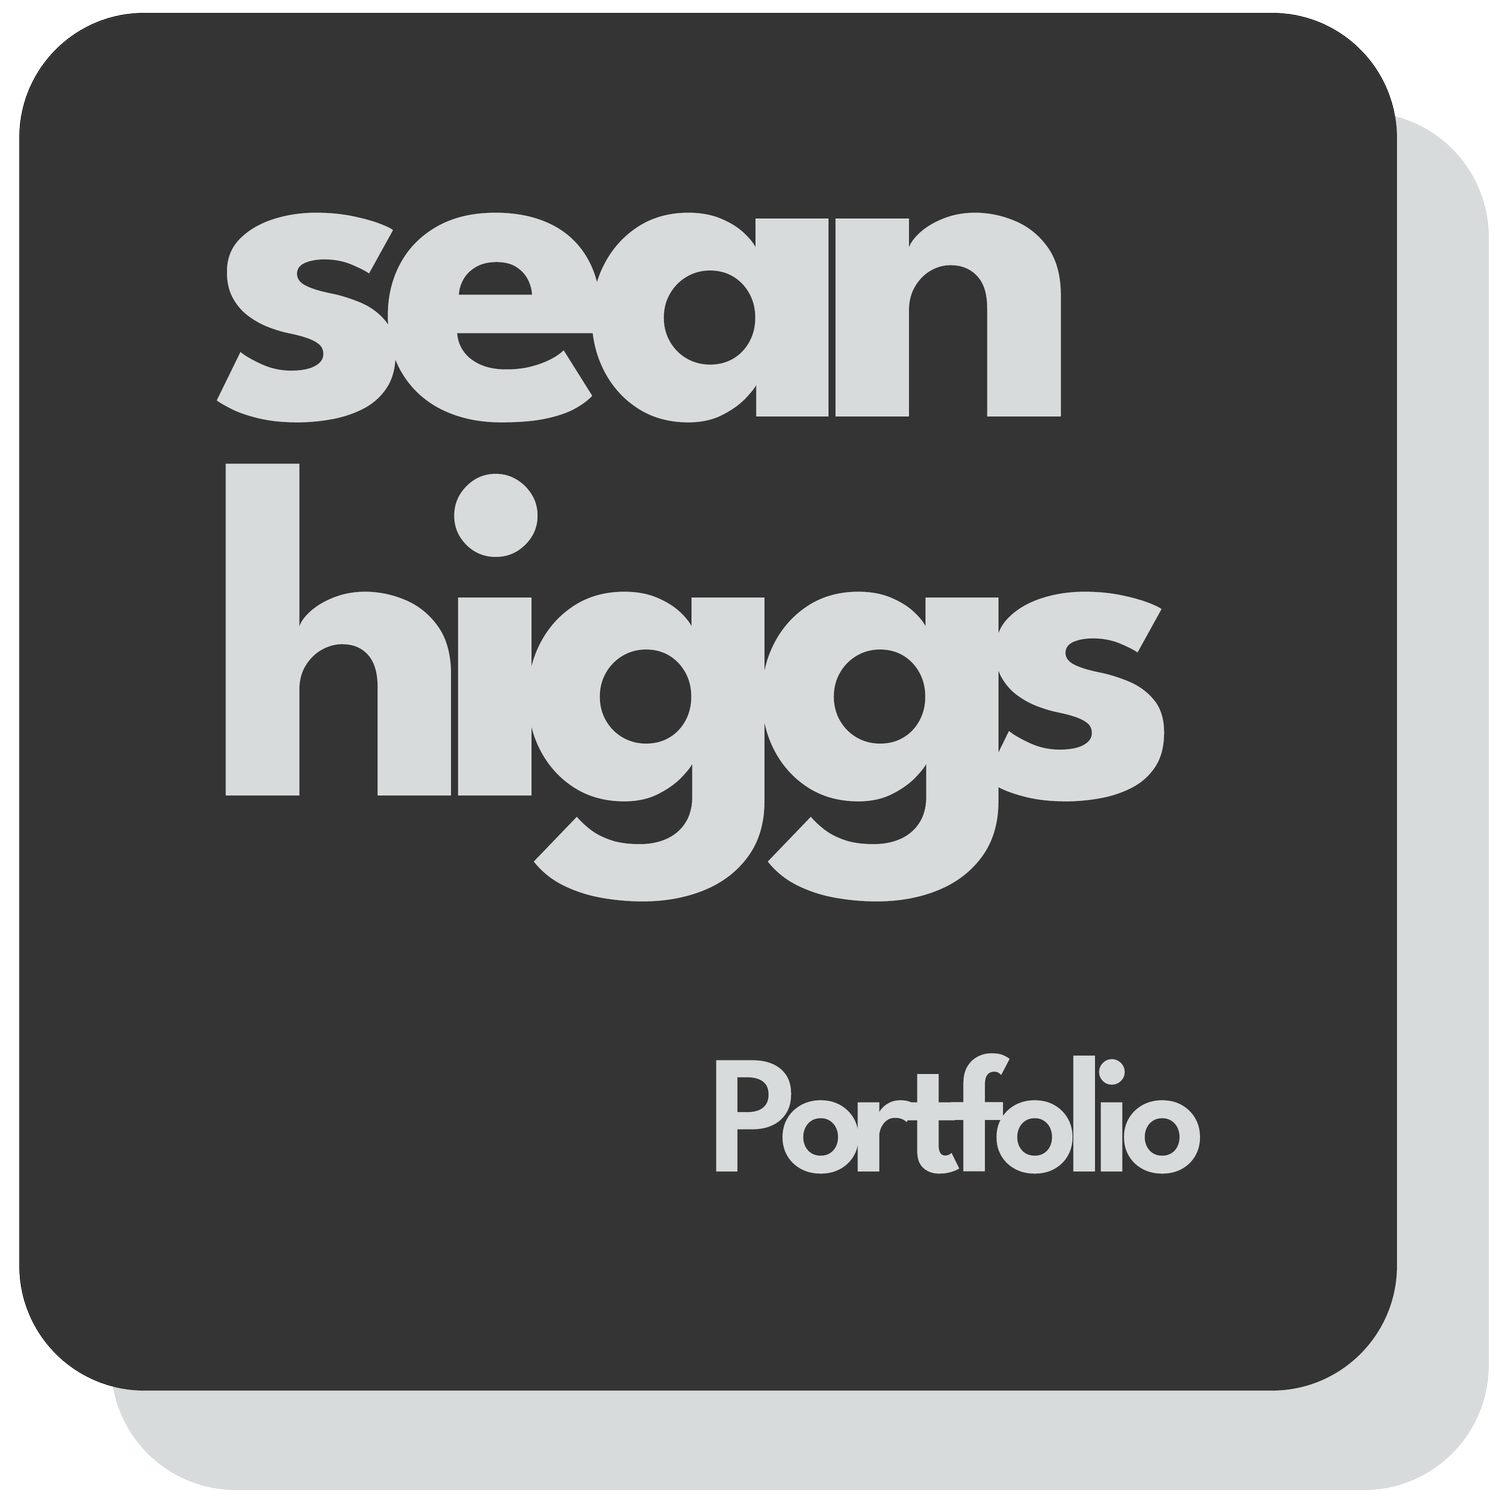 Sean Higgs